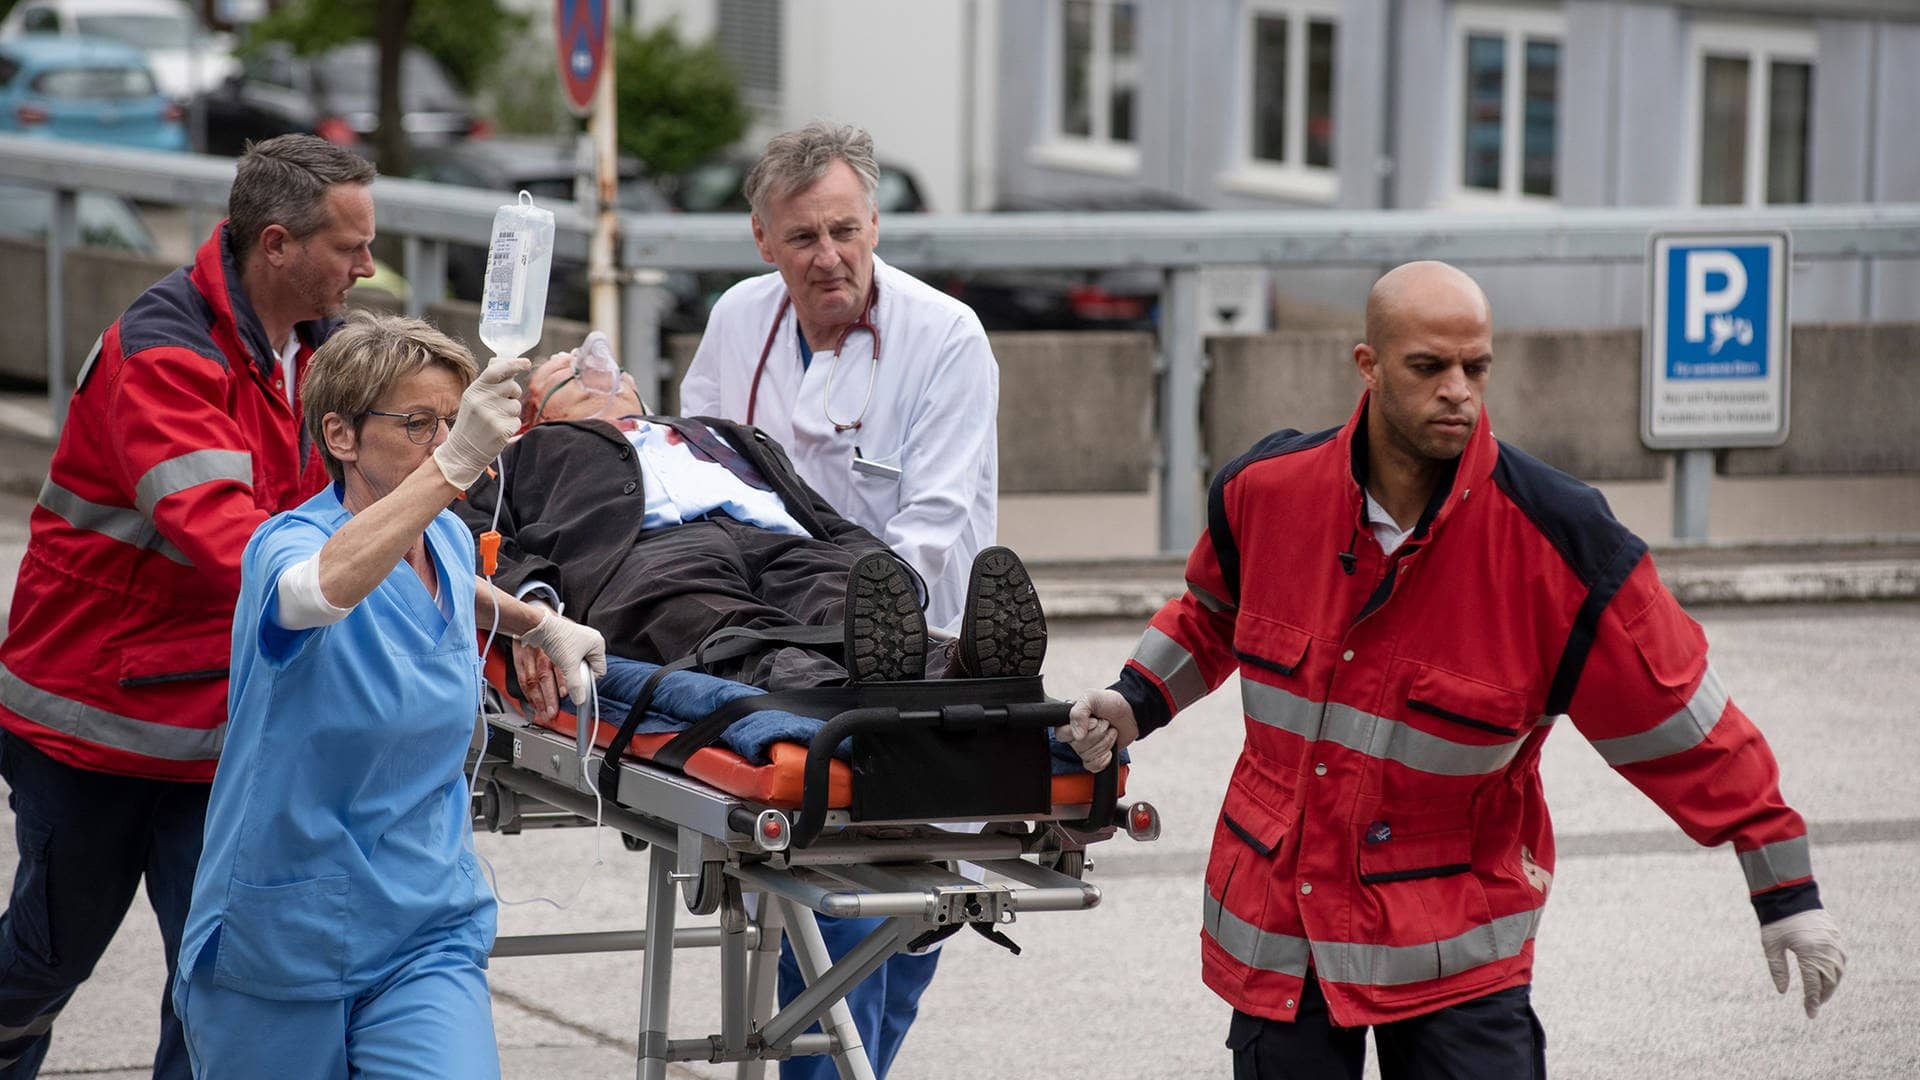 Im Tatort Kiel wird Borowski auf einer Krankentrage liegend von vier Sanitätern begleitet geschoben